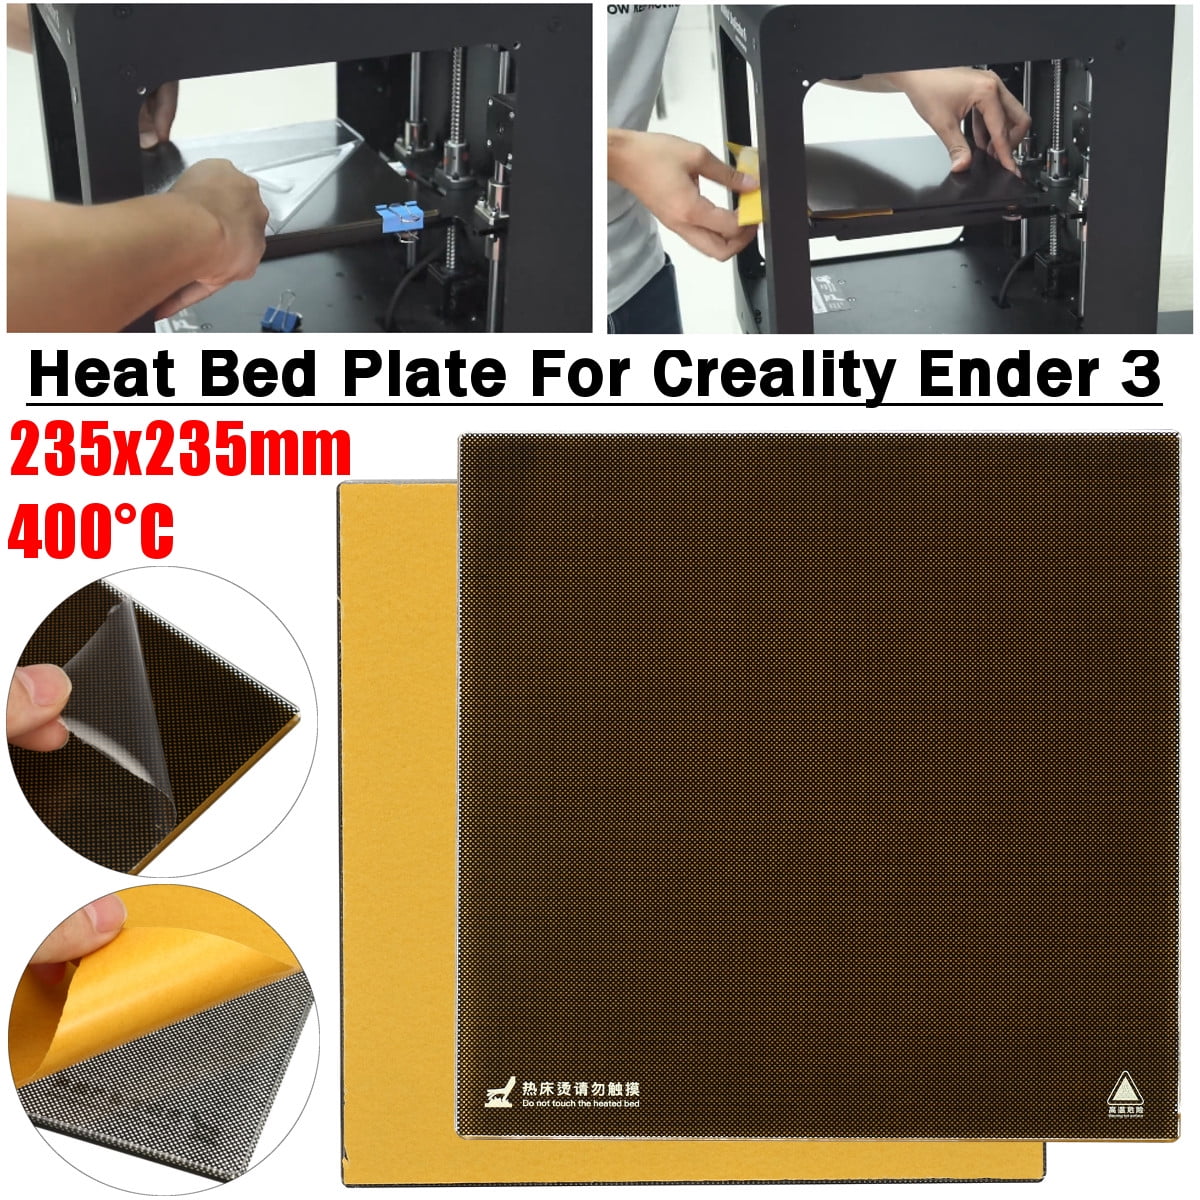 Creality 3D Printer 235x235mm Build Surface Heat Hot Bed Platform Sticker Sheet